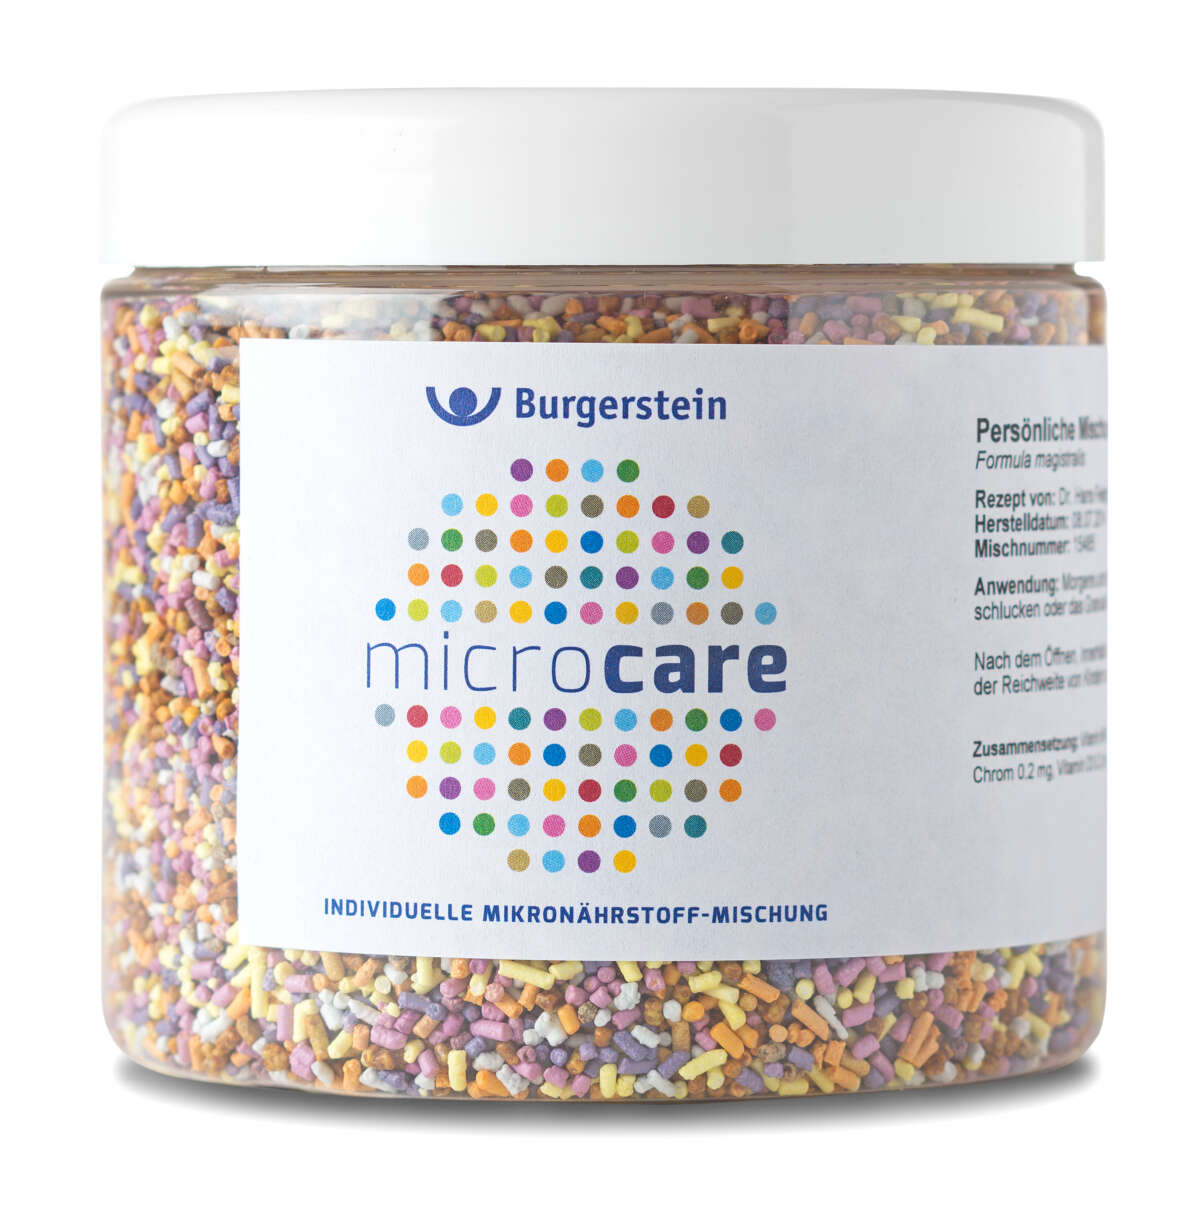 Burgerstein Microcare bild dose600